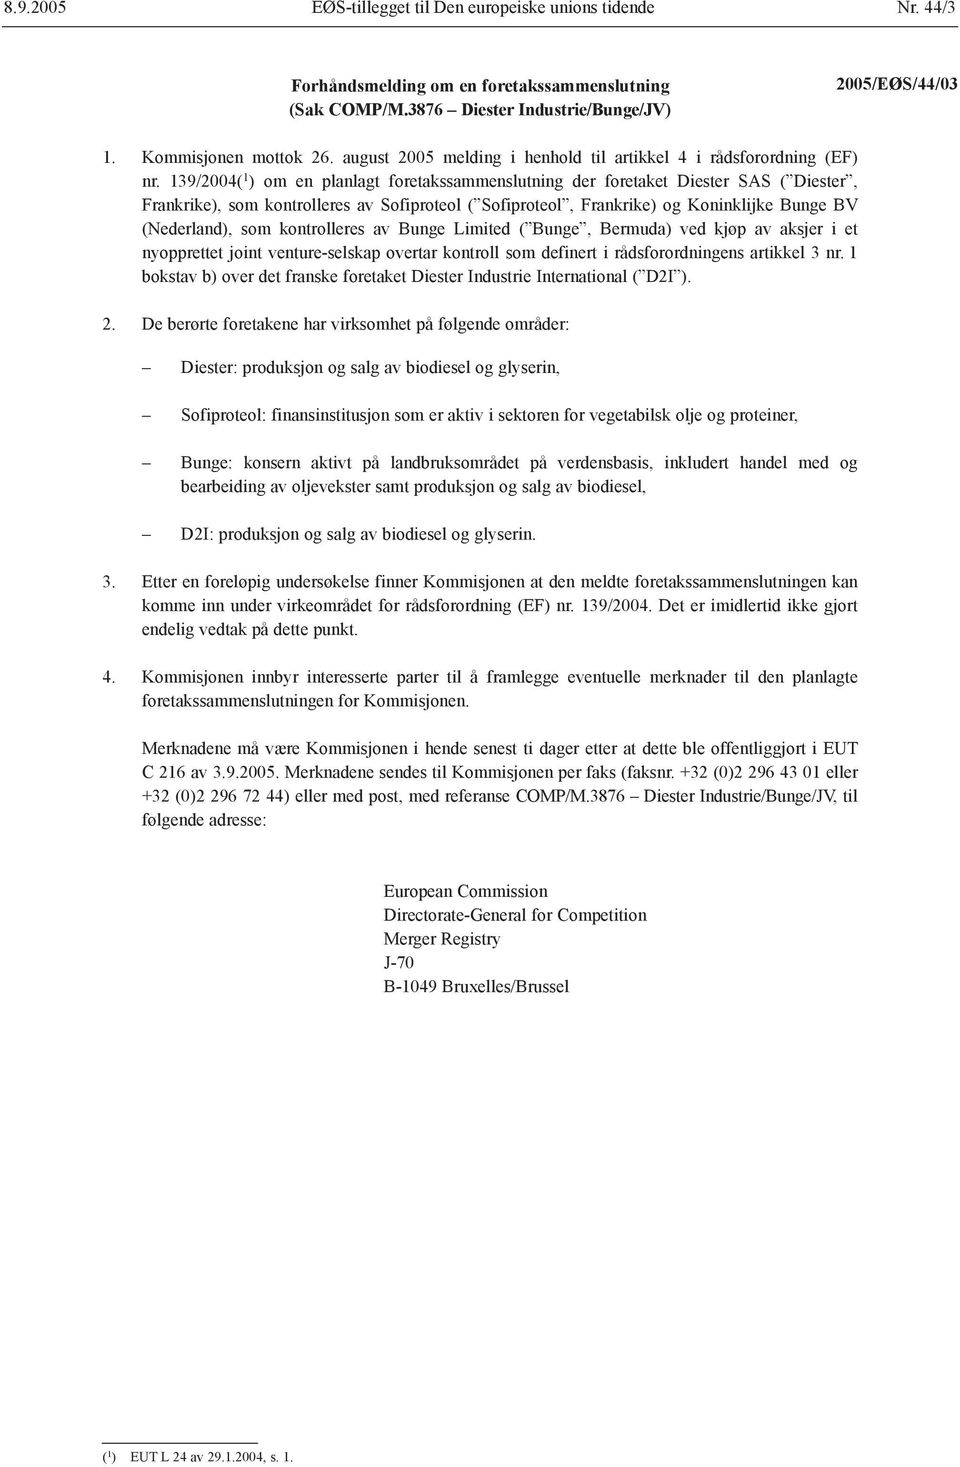 139/2004( 1 ) om en planlagt foretakssammenslutning der foretaket Diester SAS ( Diester, Frankrike), som kontrolleres av Sofiproteol ( Sofiproteol, Frankrike) og Koninklijke Bunge BV (Nederland), som